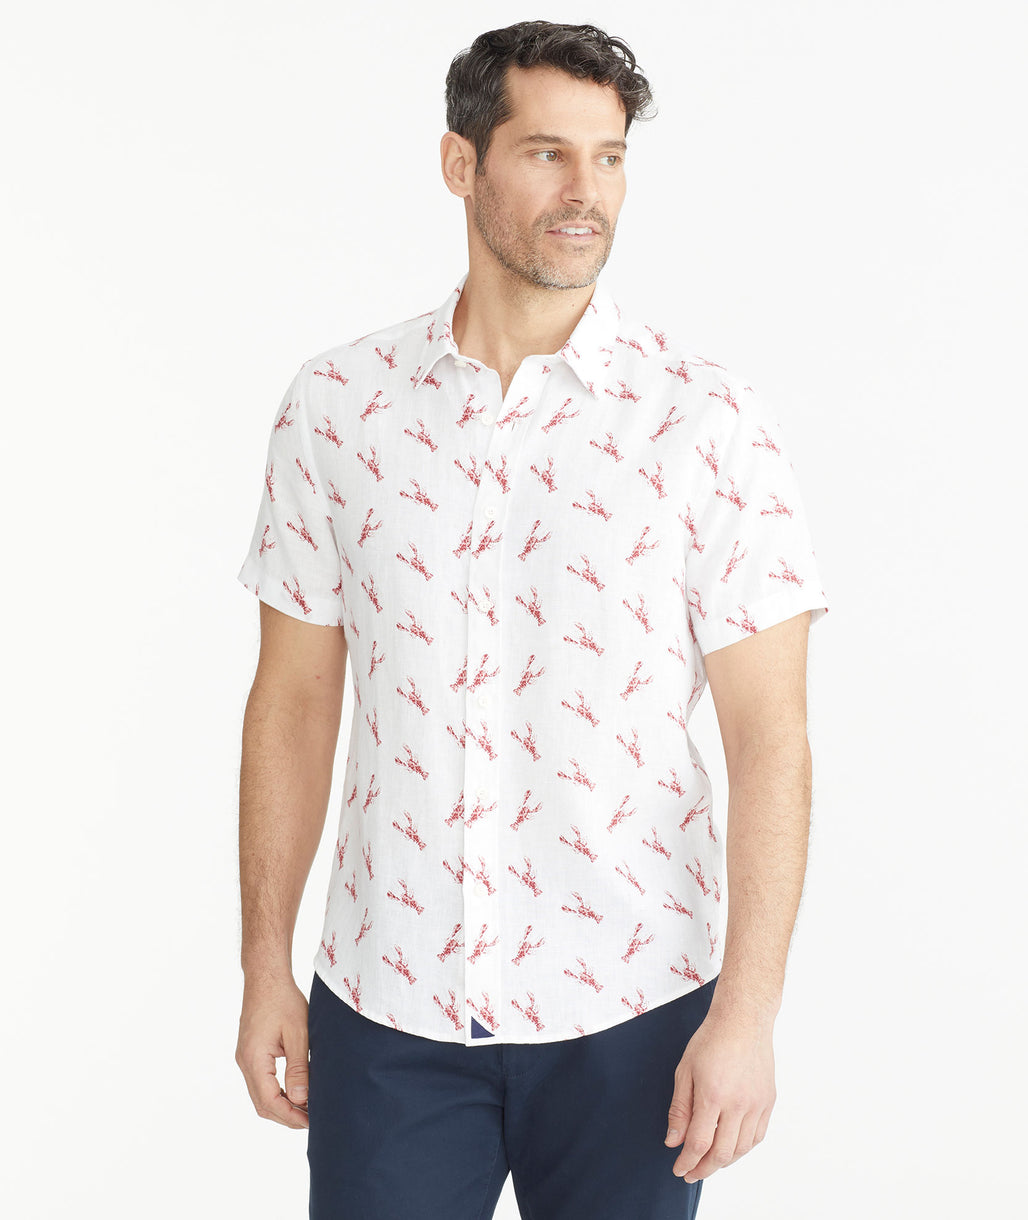 Model is wearing a David Hart x UNTUCKit Lobster Linen Short-Sleeve Shirt.